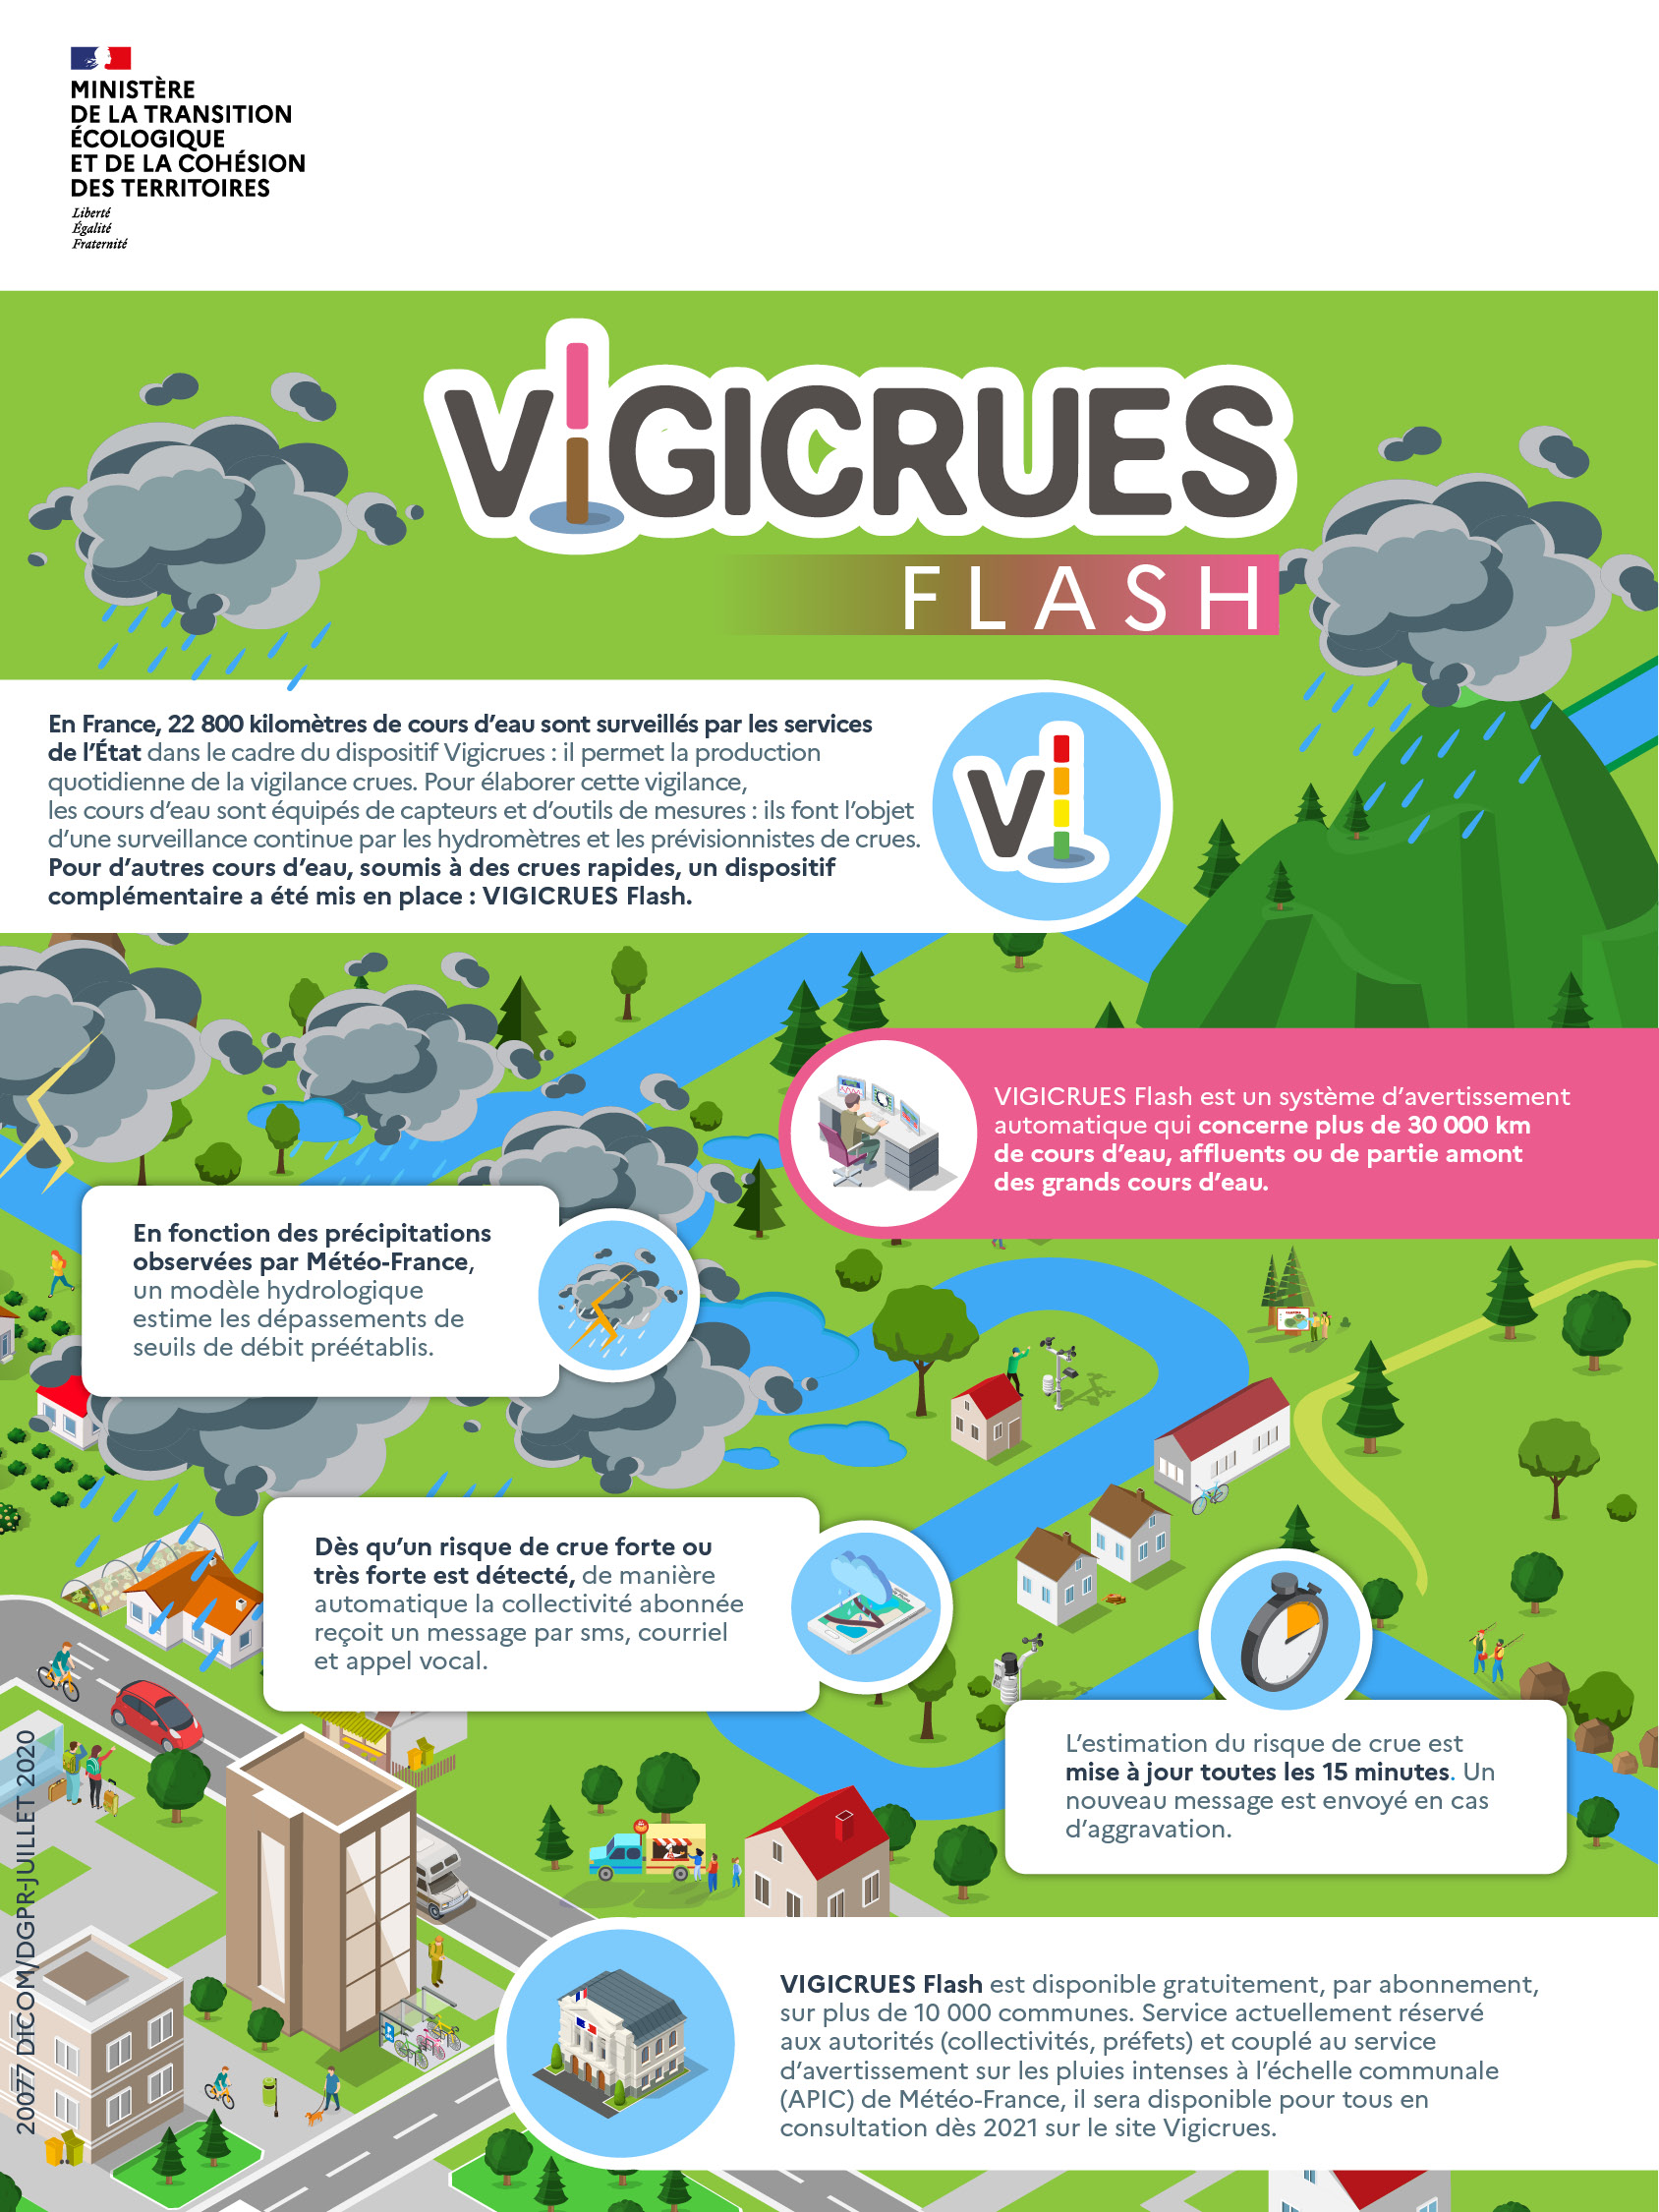 Infographie présentant le fonctionnement de Vigicrues Flash.